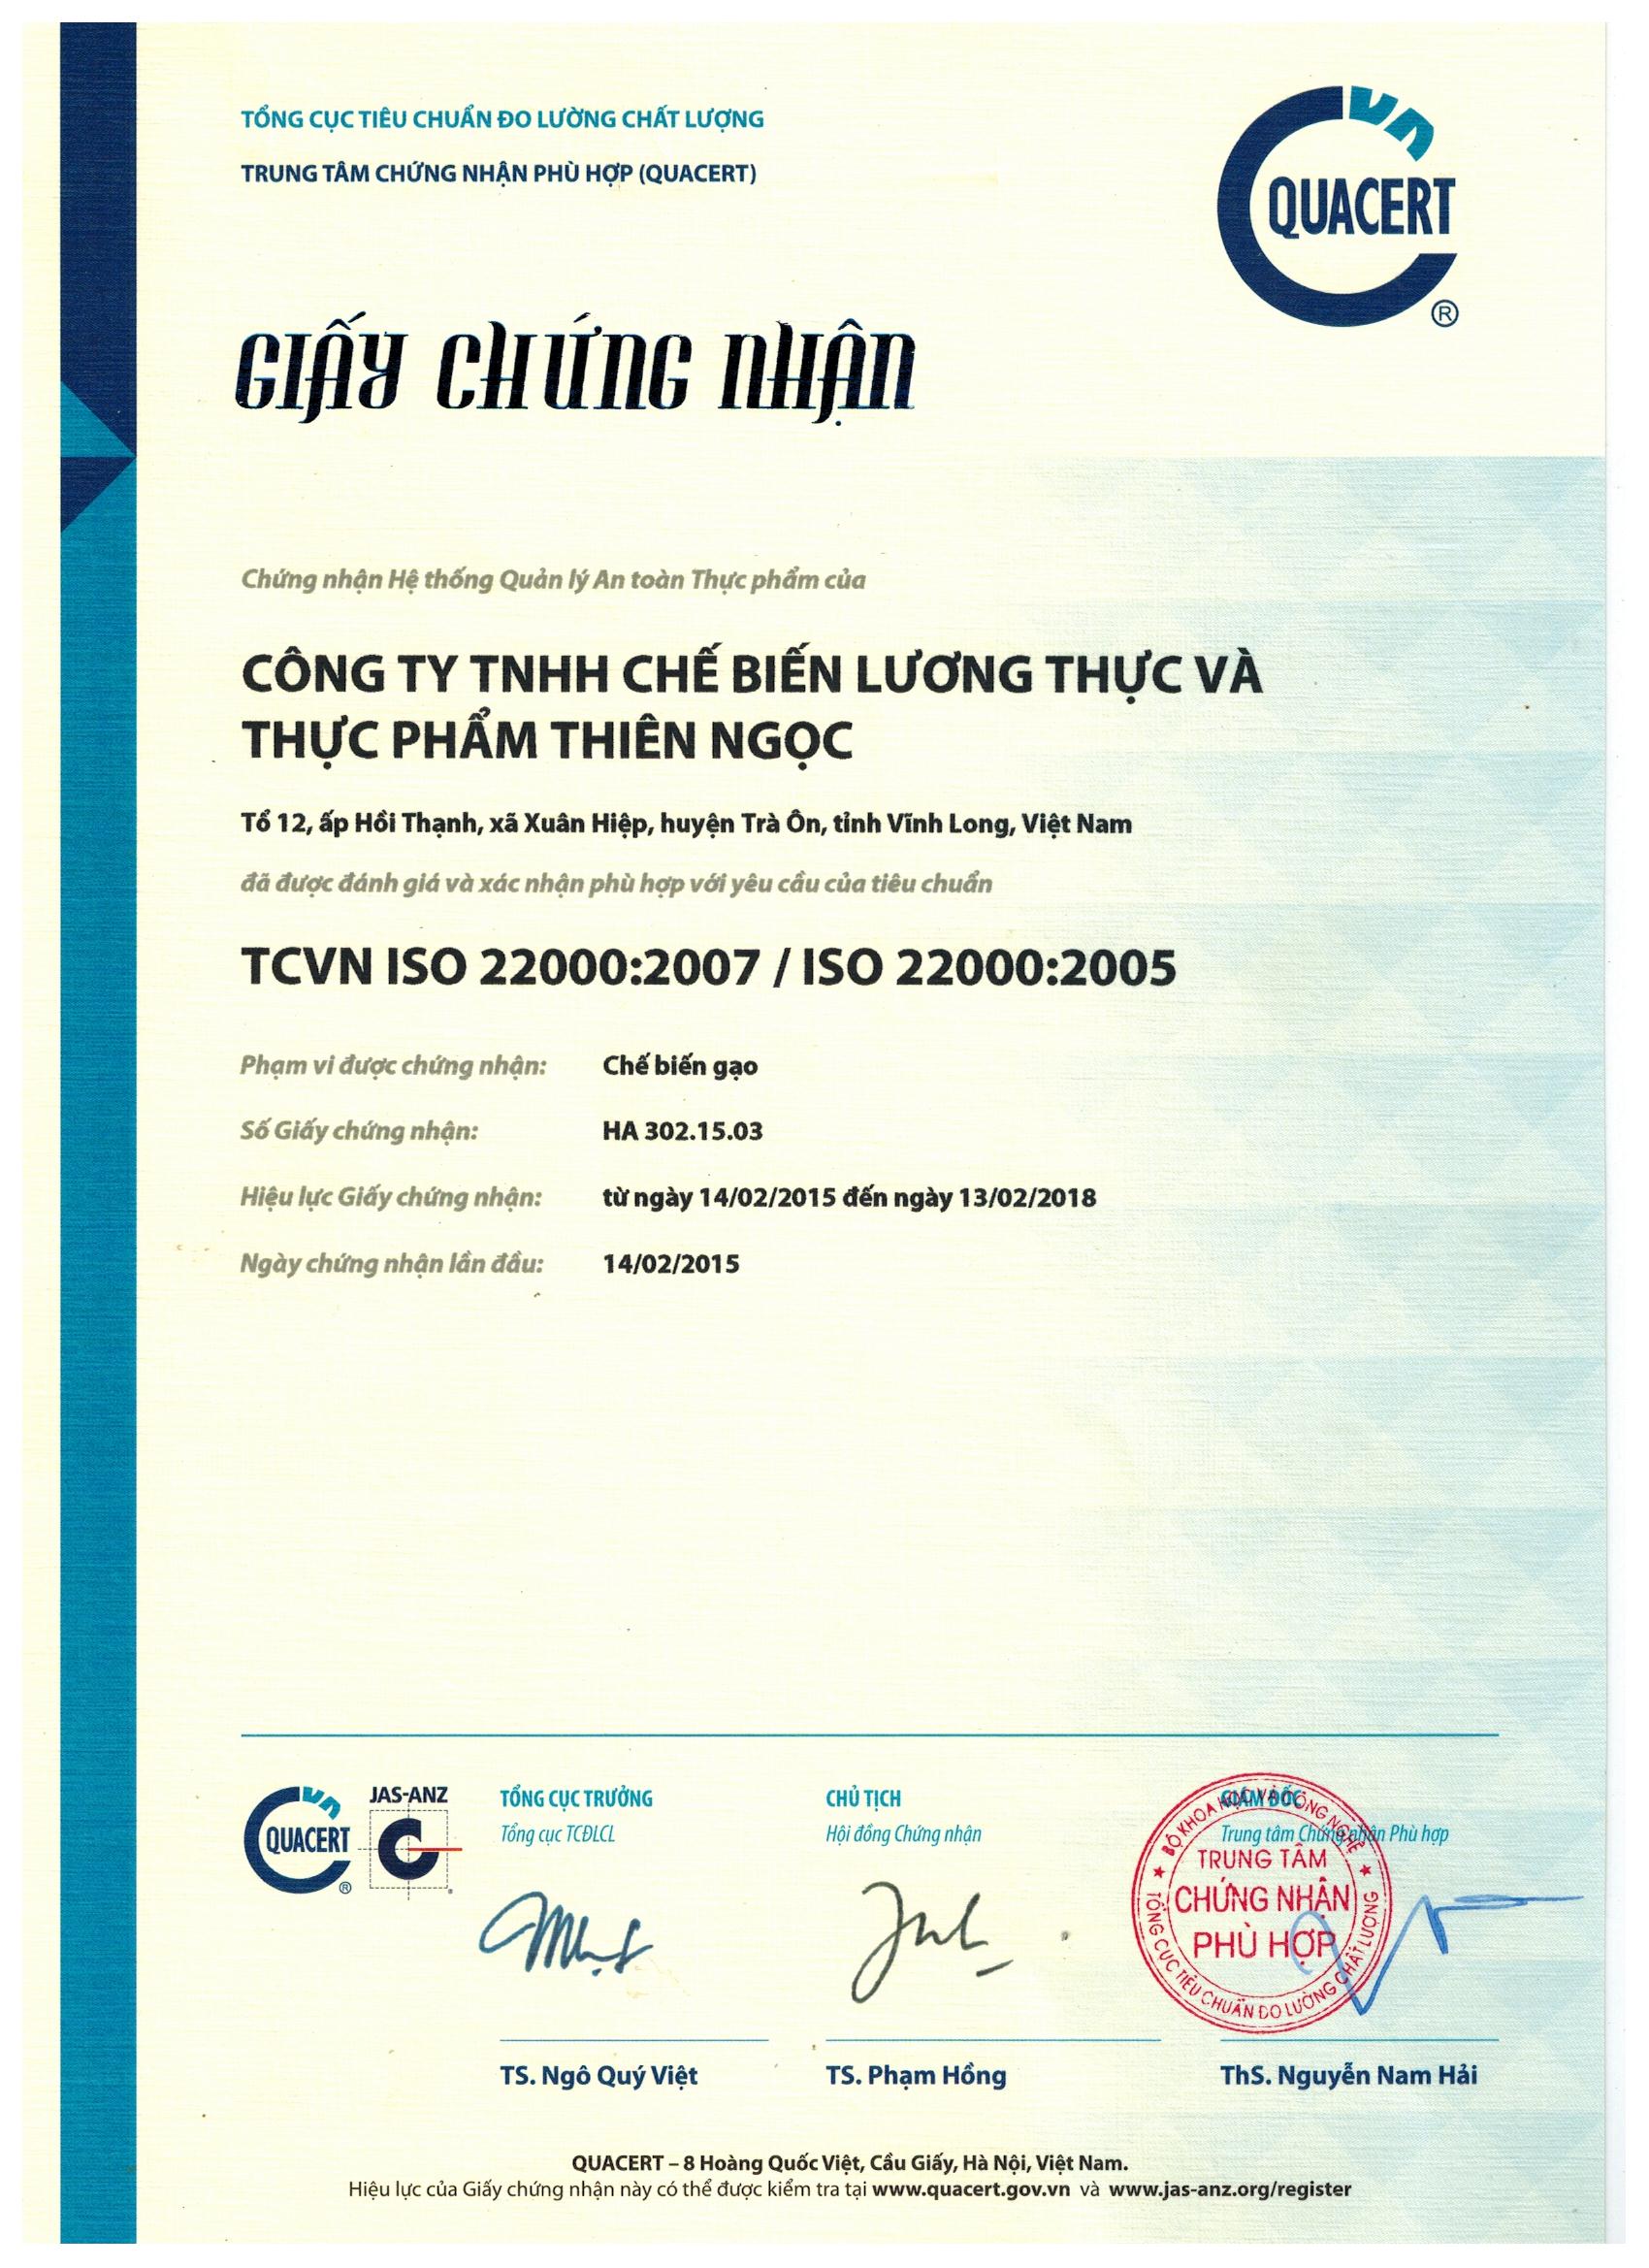 TCVN ISO 22000:2007/ISO 22000:2005 - Công Ty TNHH Chế Biến Lương Thực Và Thực Phẩm Thiên Ngọc